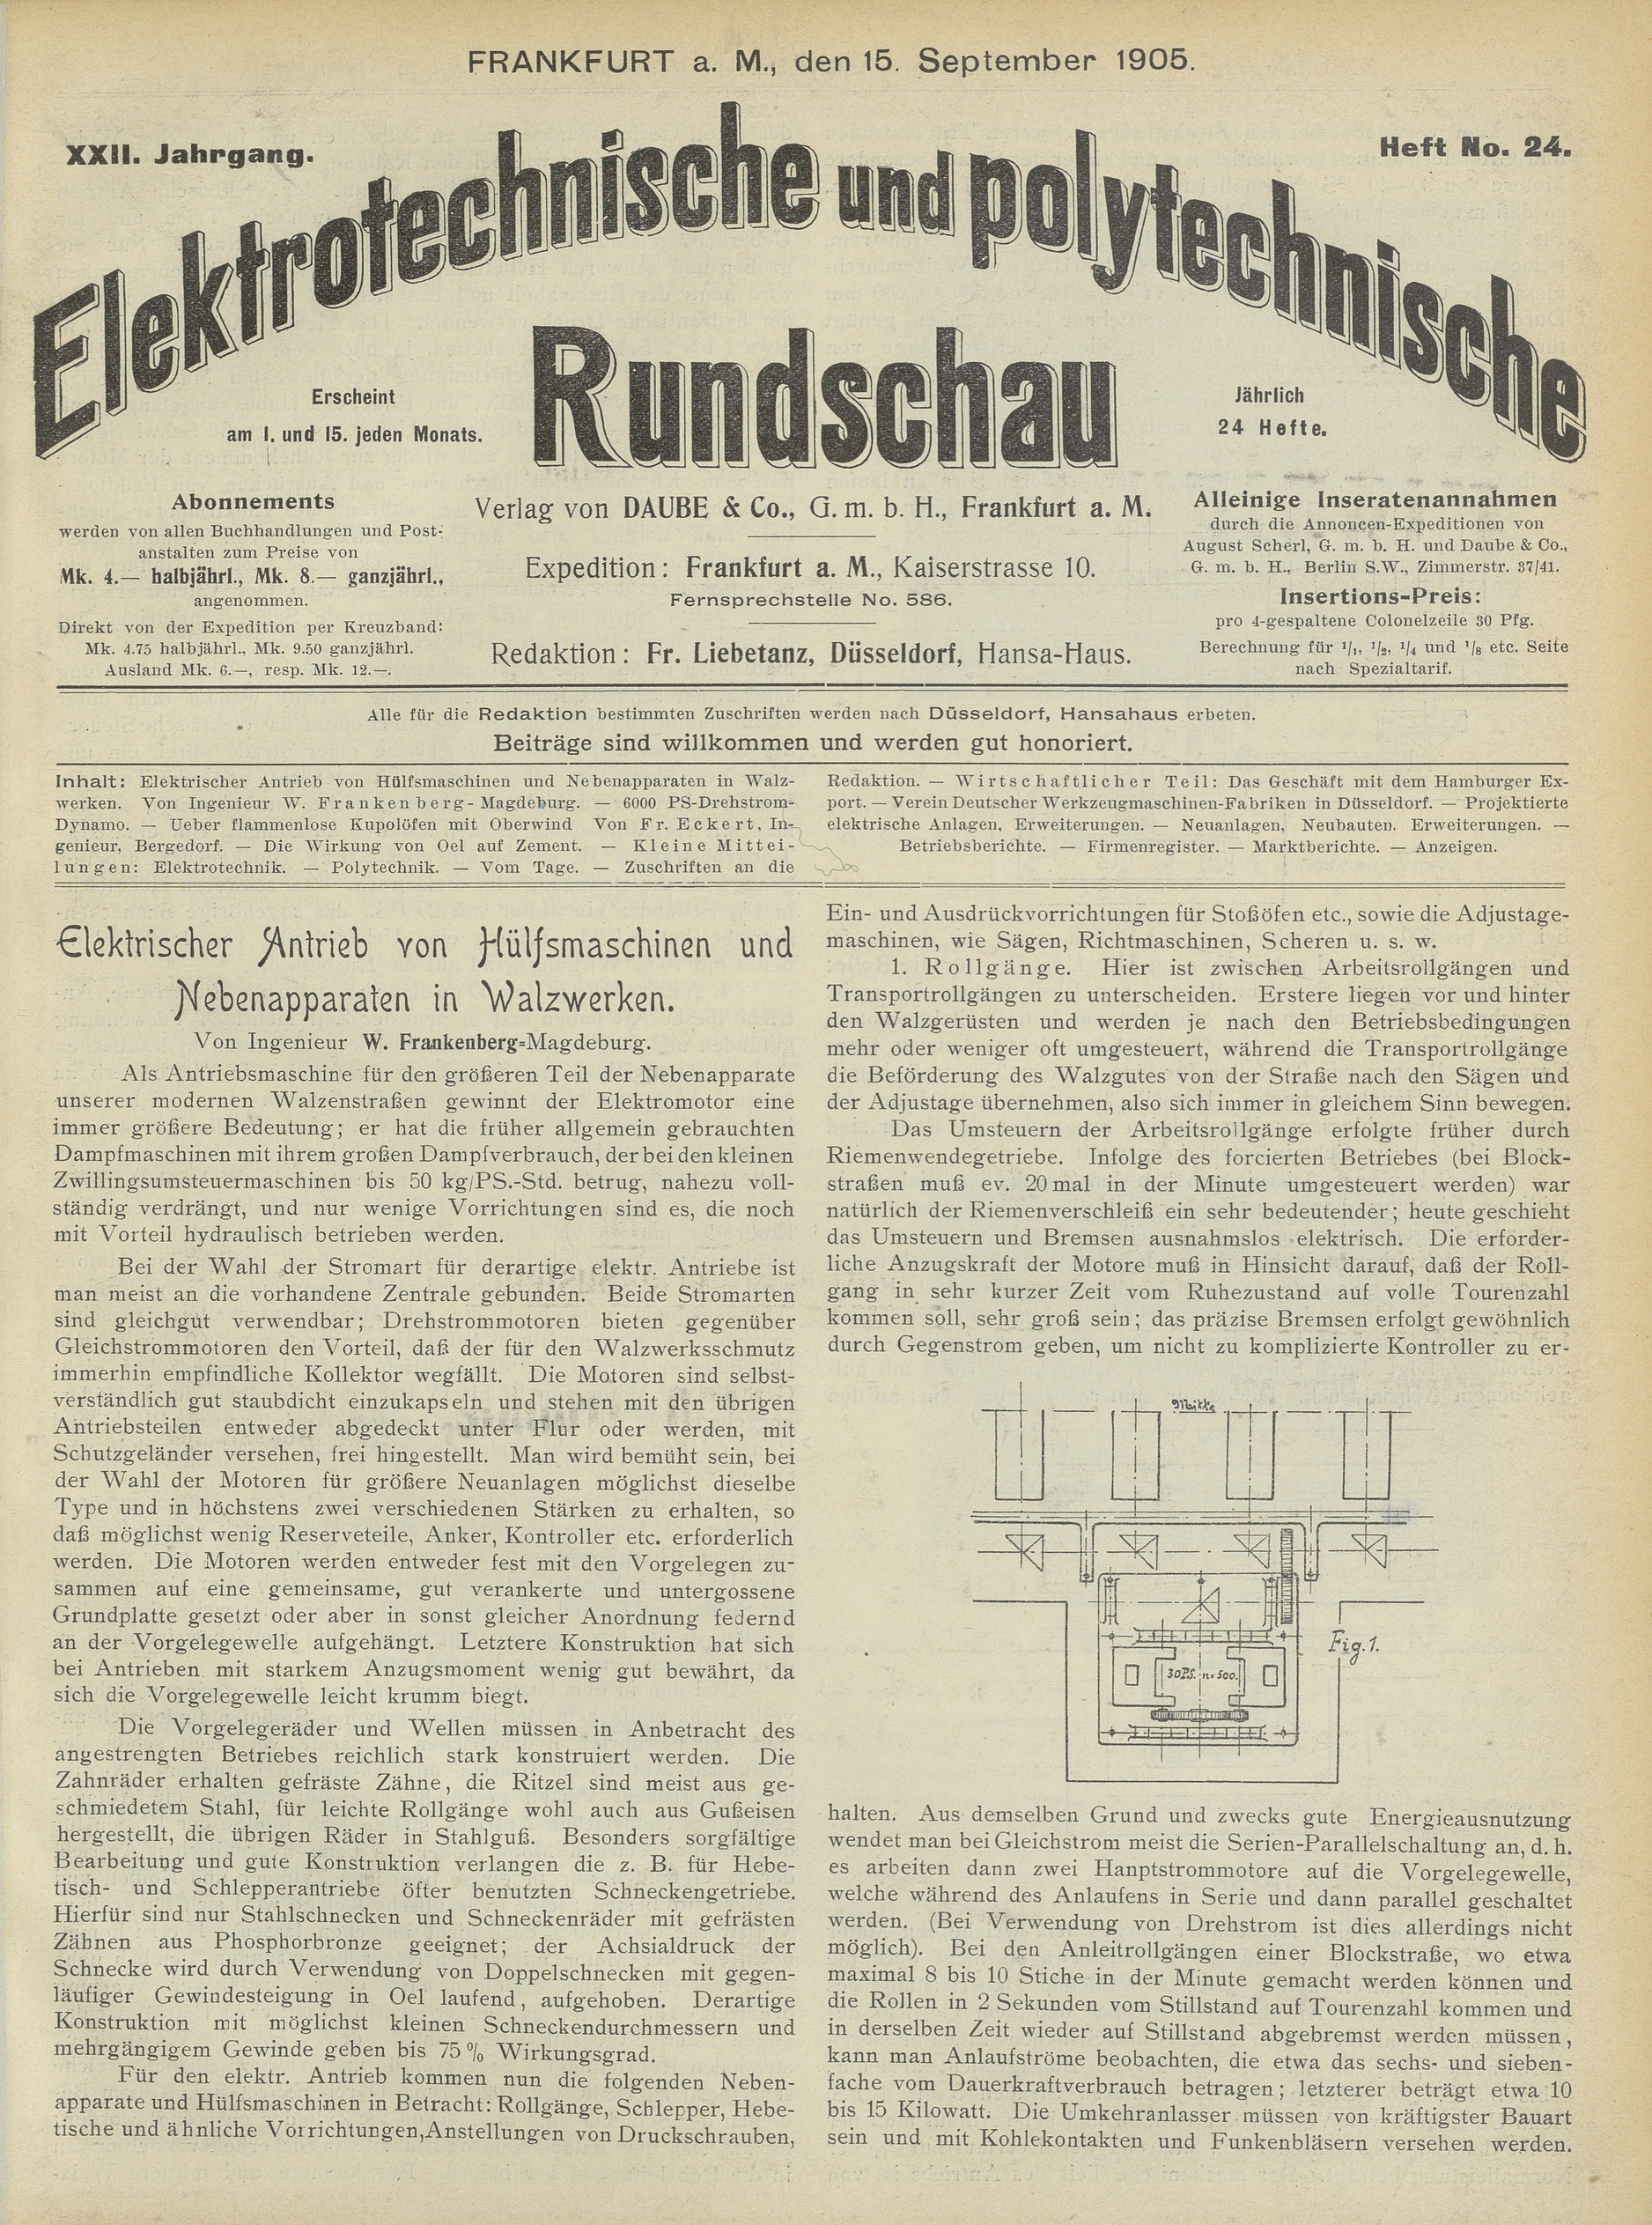 Elektrotechnische und polytechnische Rundschau, XXII. Jahrgang, Heft No. 24